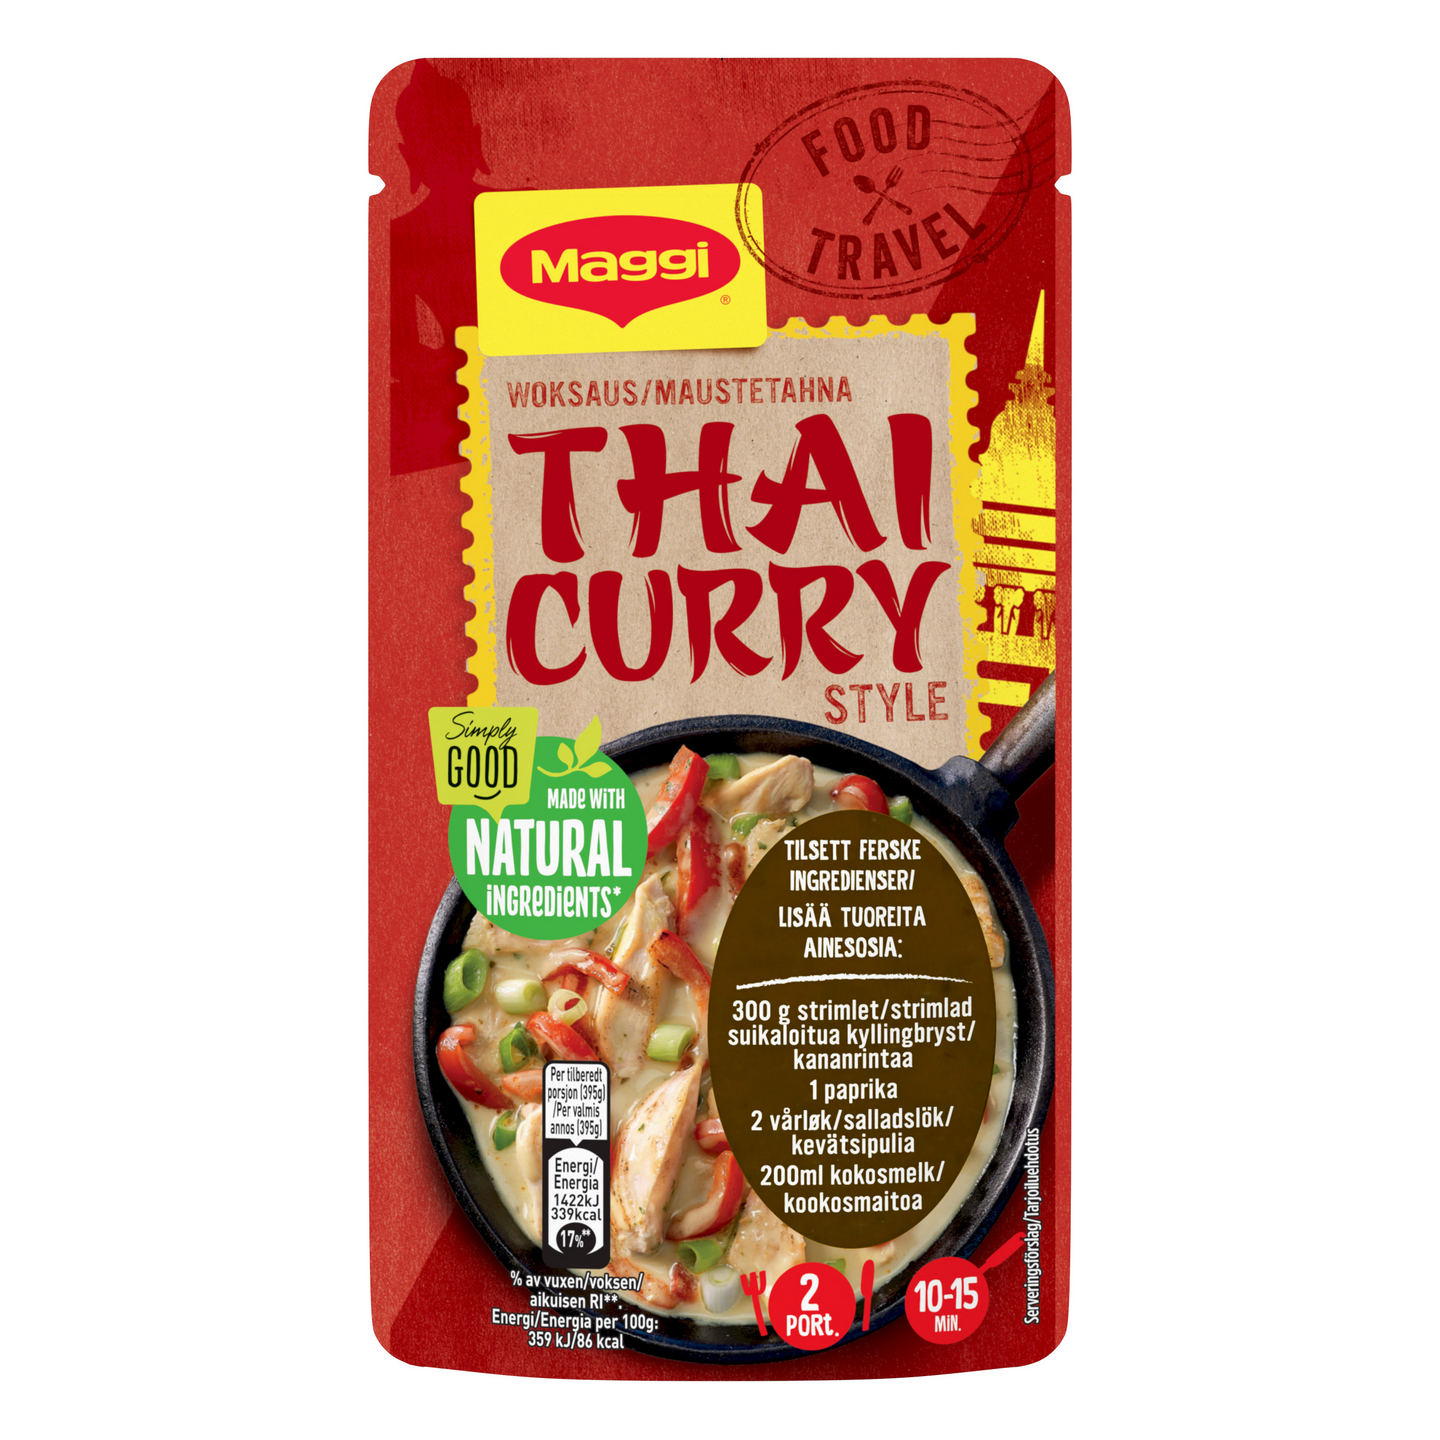 Maggi maustetahna 65g Thai Curry